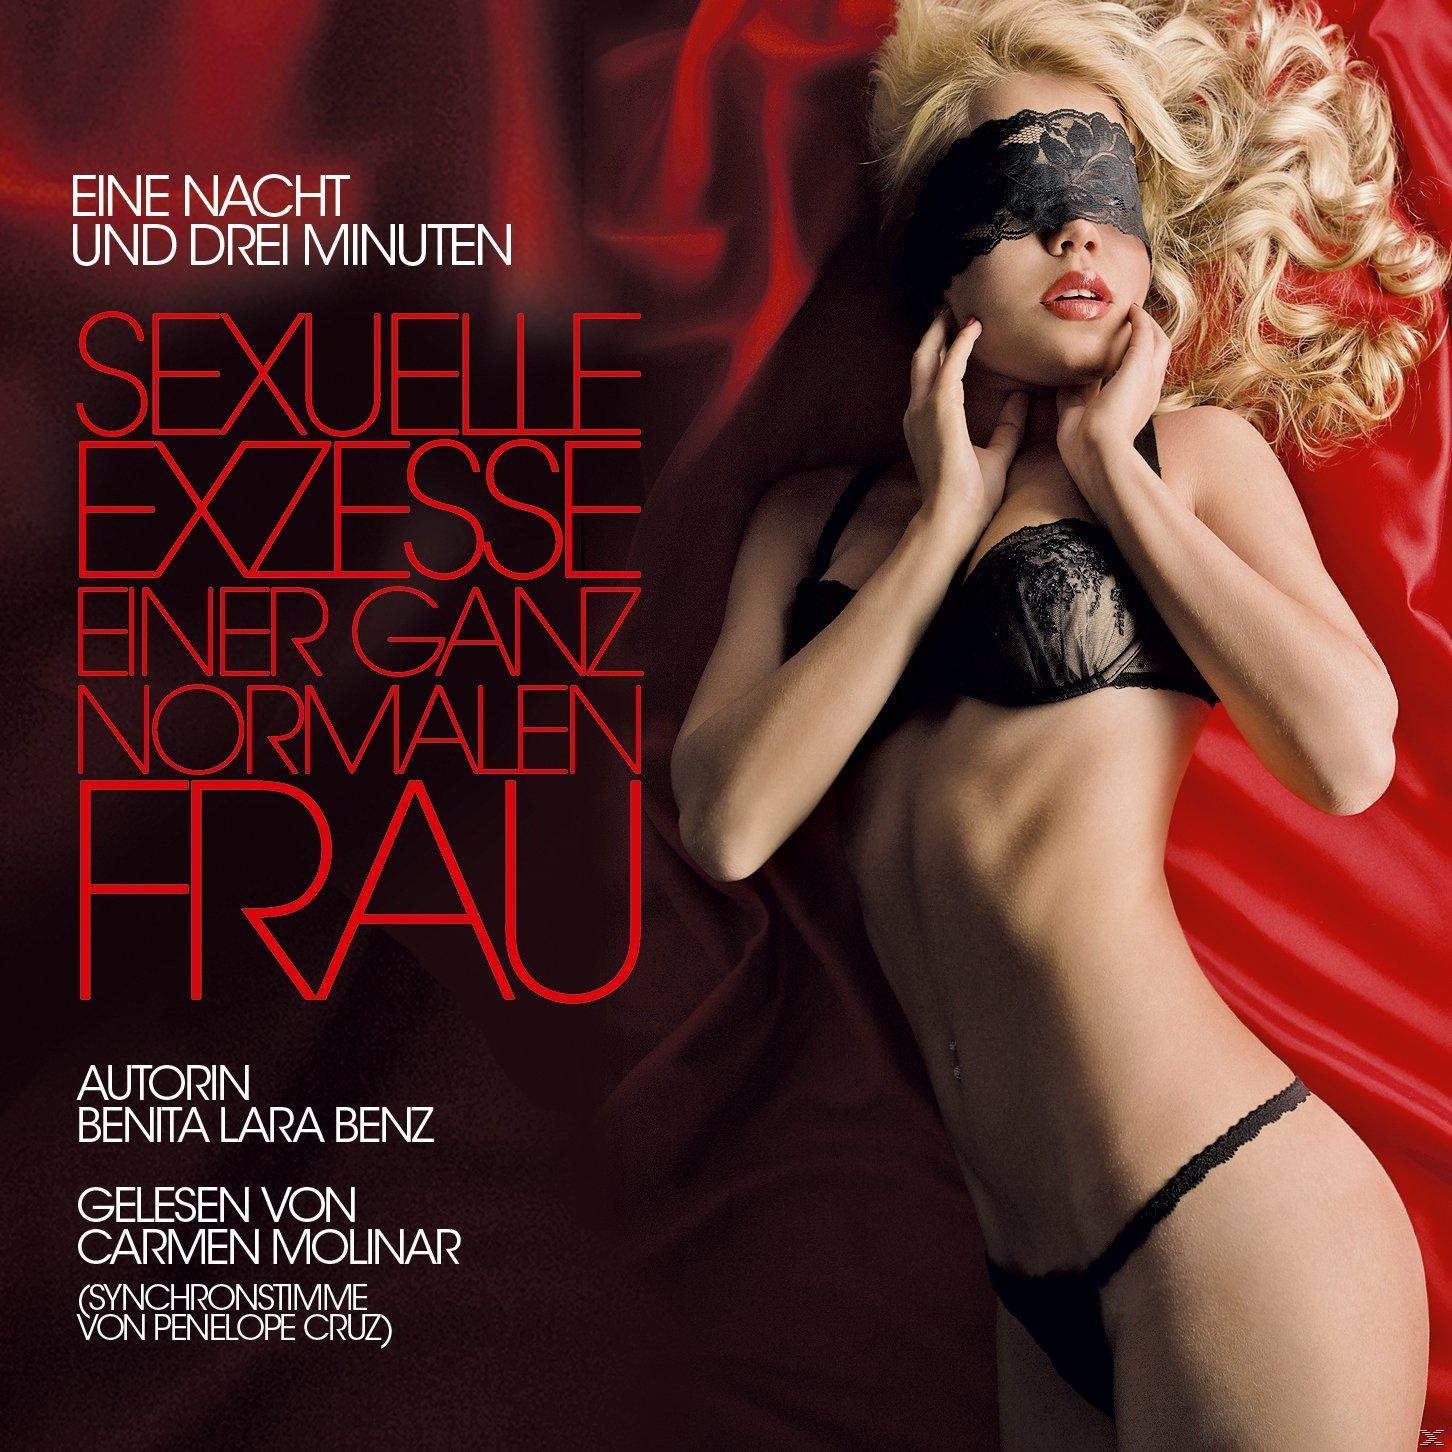 Exzesse Sexuelle normalen einer Frau ganz (CD) -